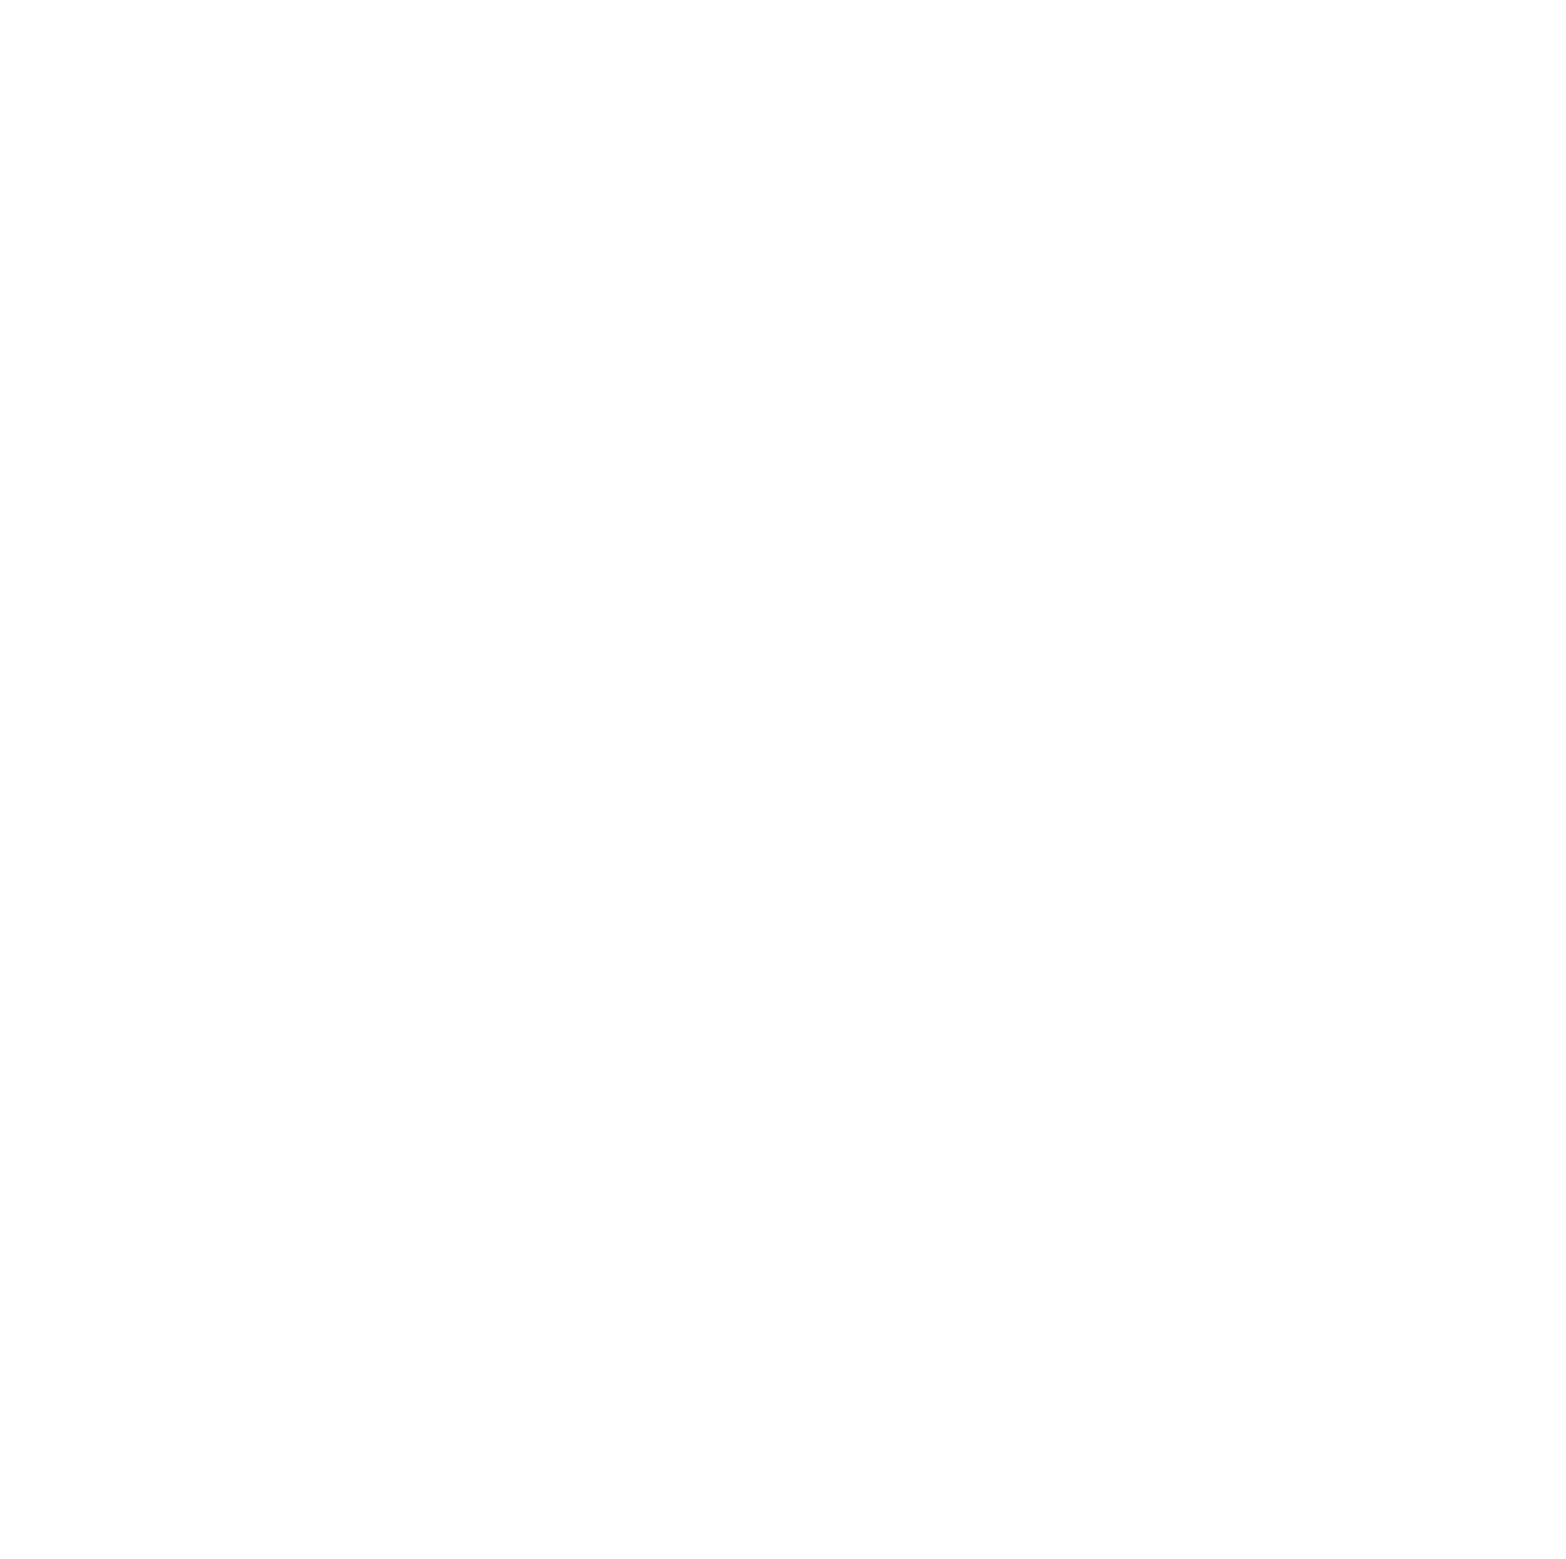 Immobel logo for dark backgrounds (transparent PNG)